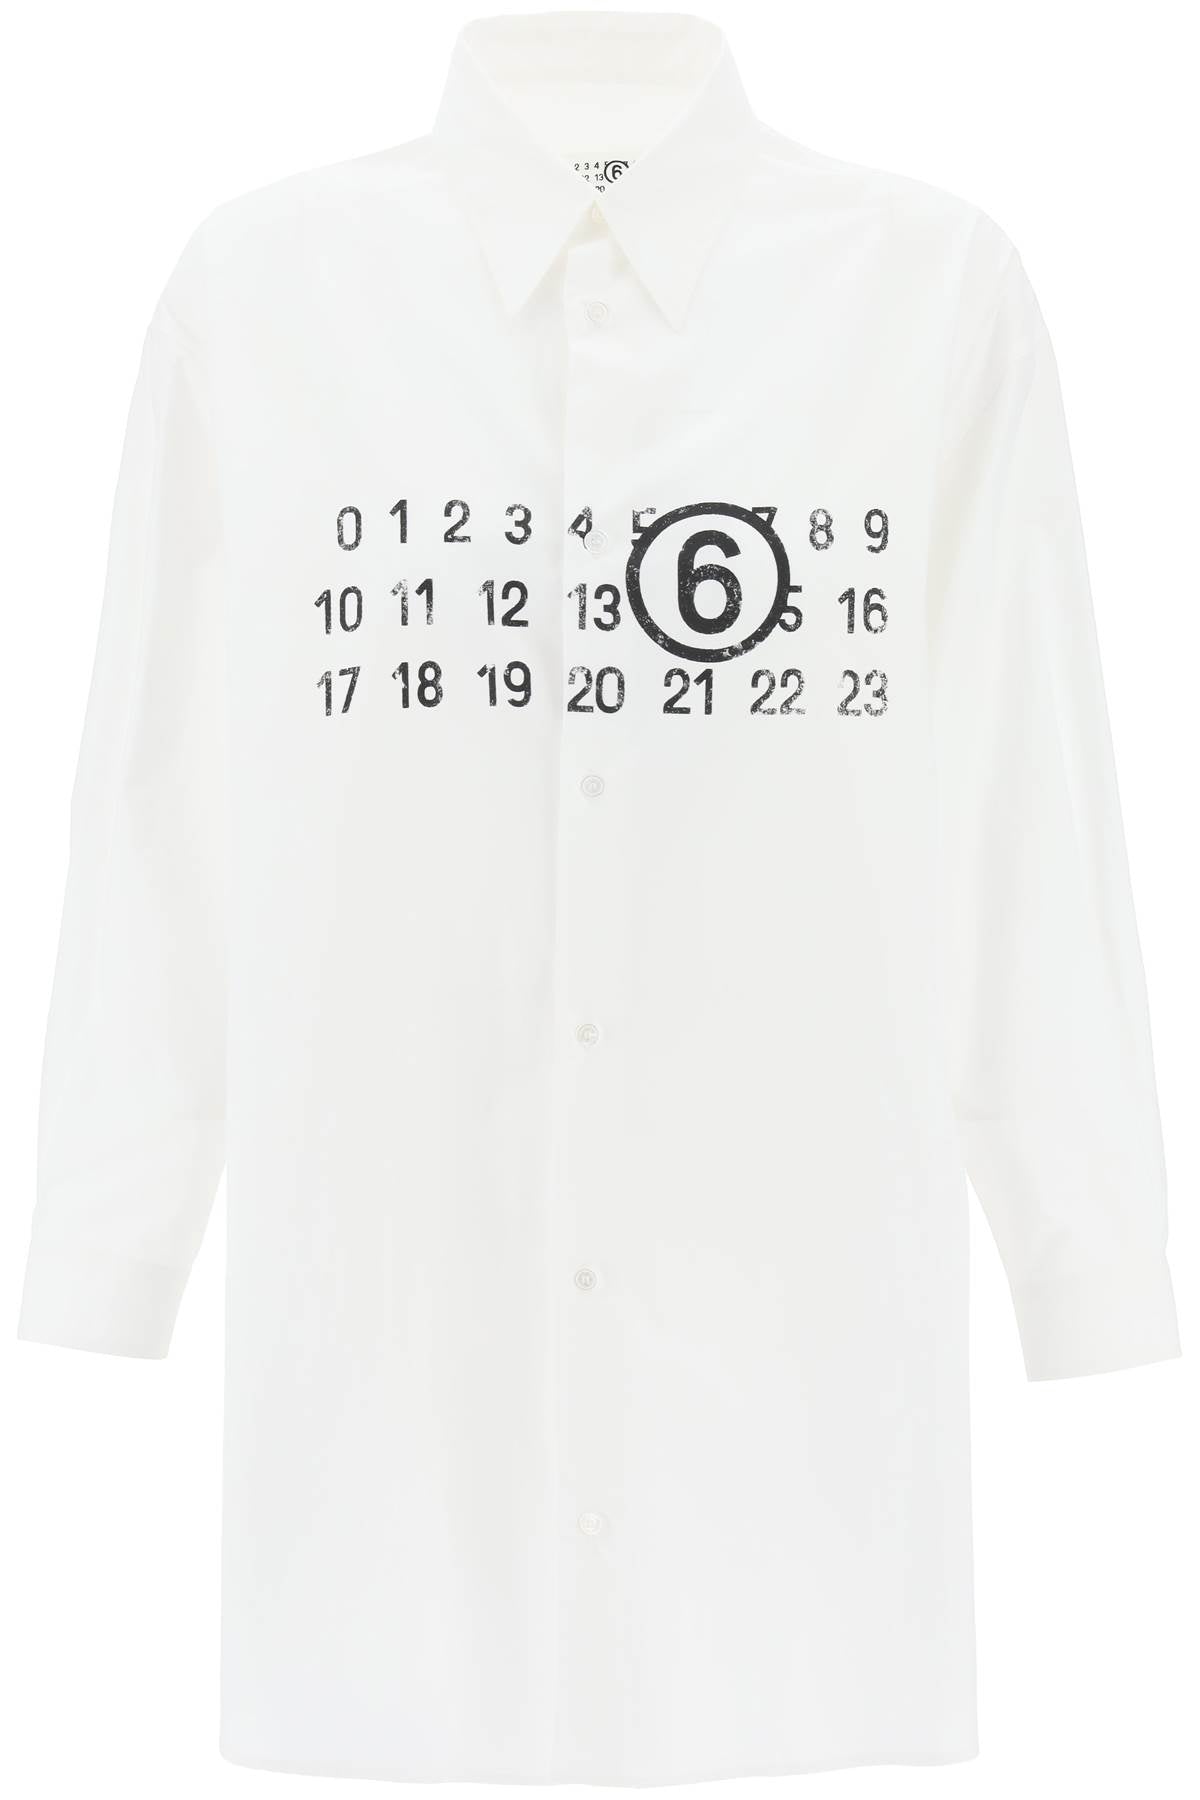 Mm6 maison margiela shirt dress with numeric logo-0